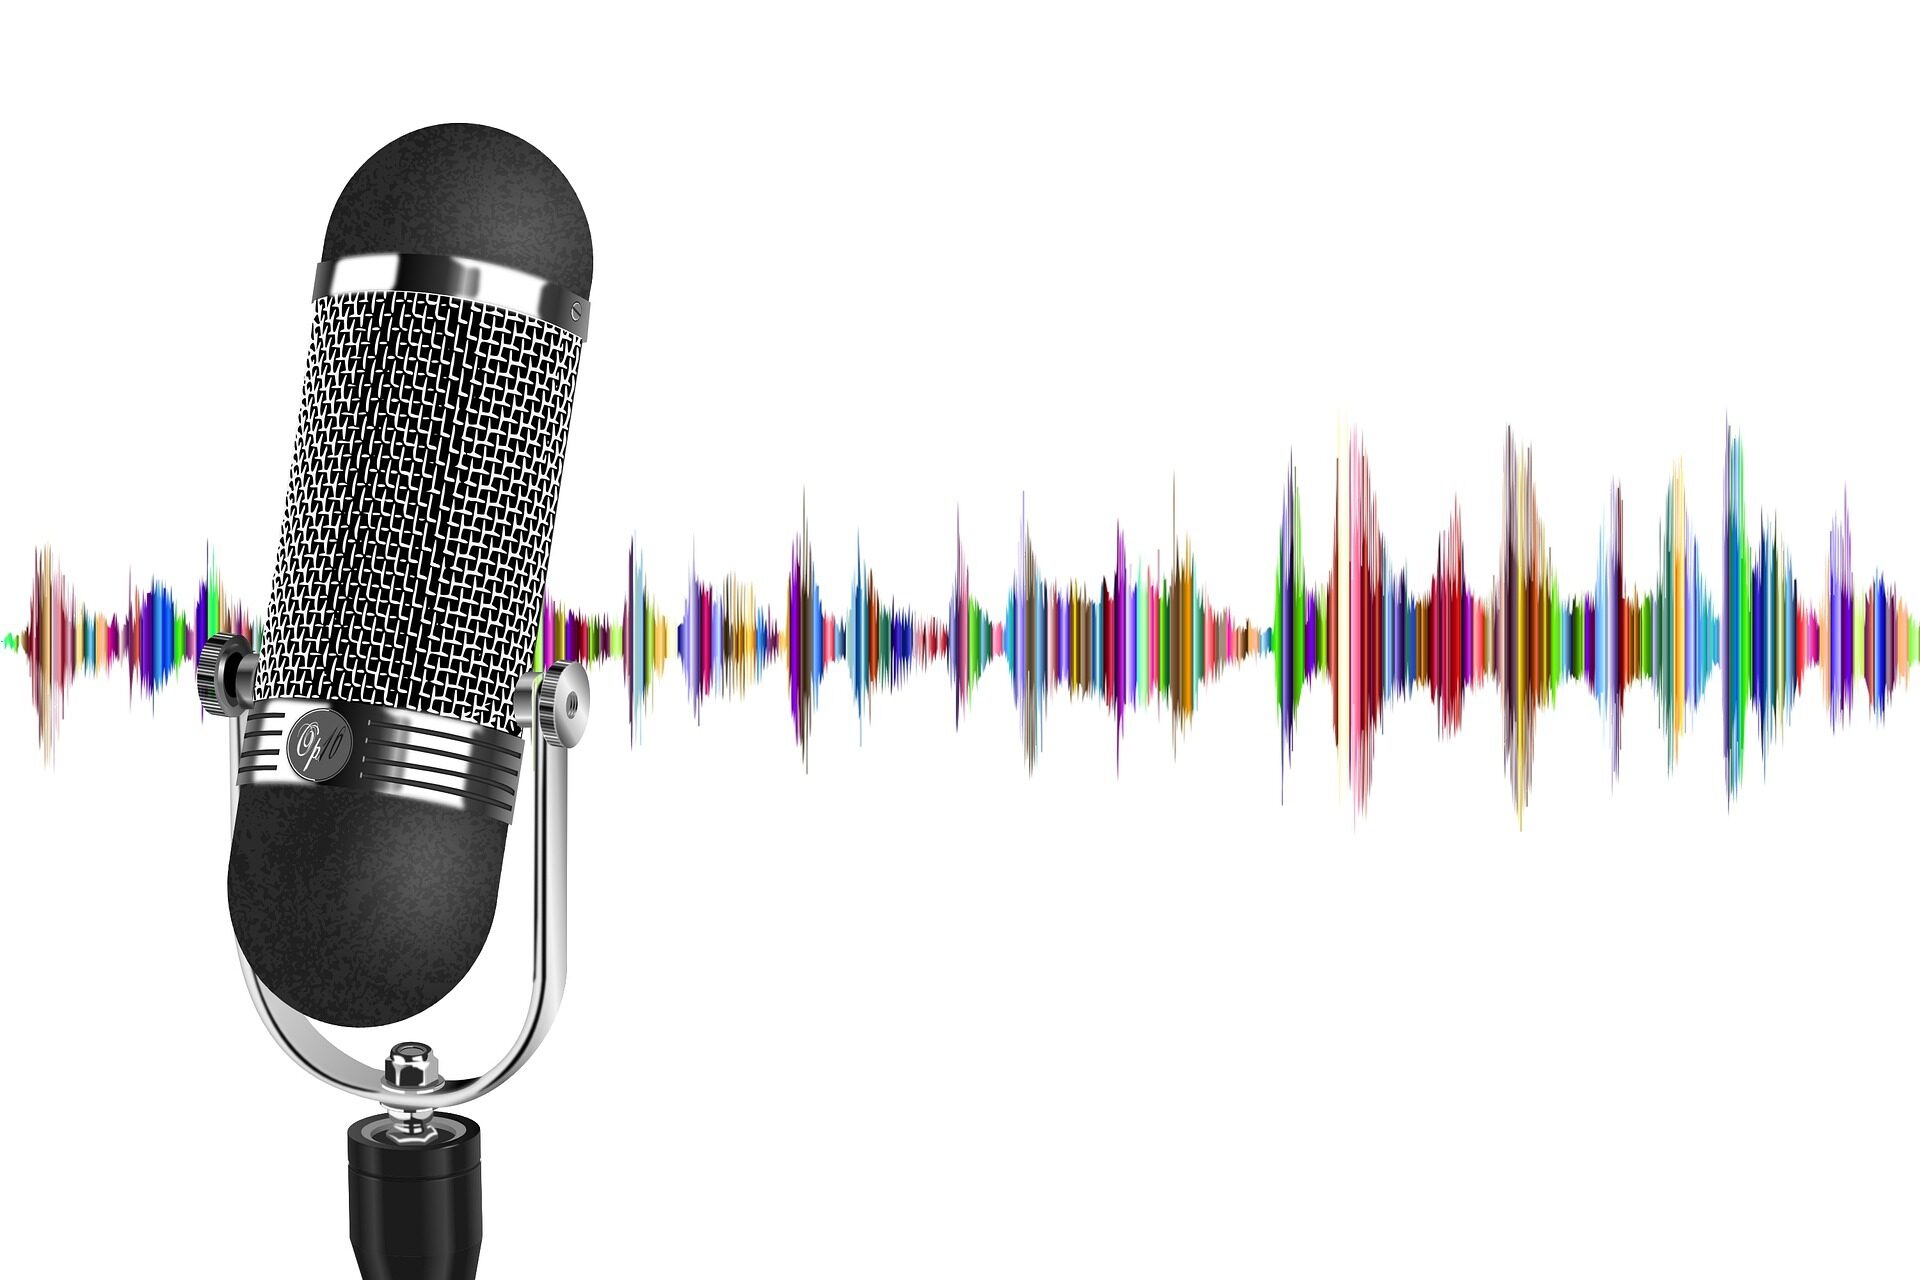 Abbildung eines Mikrofons vor Schallwellen als Veranschaulichung eines Podcasts.